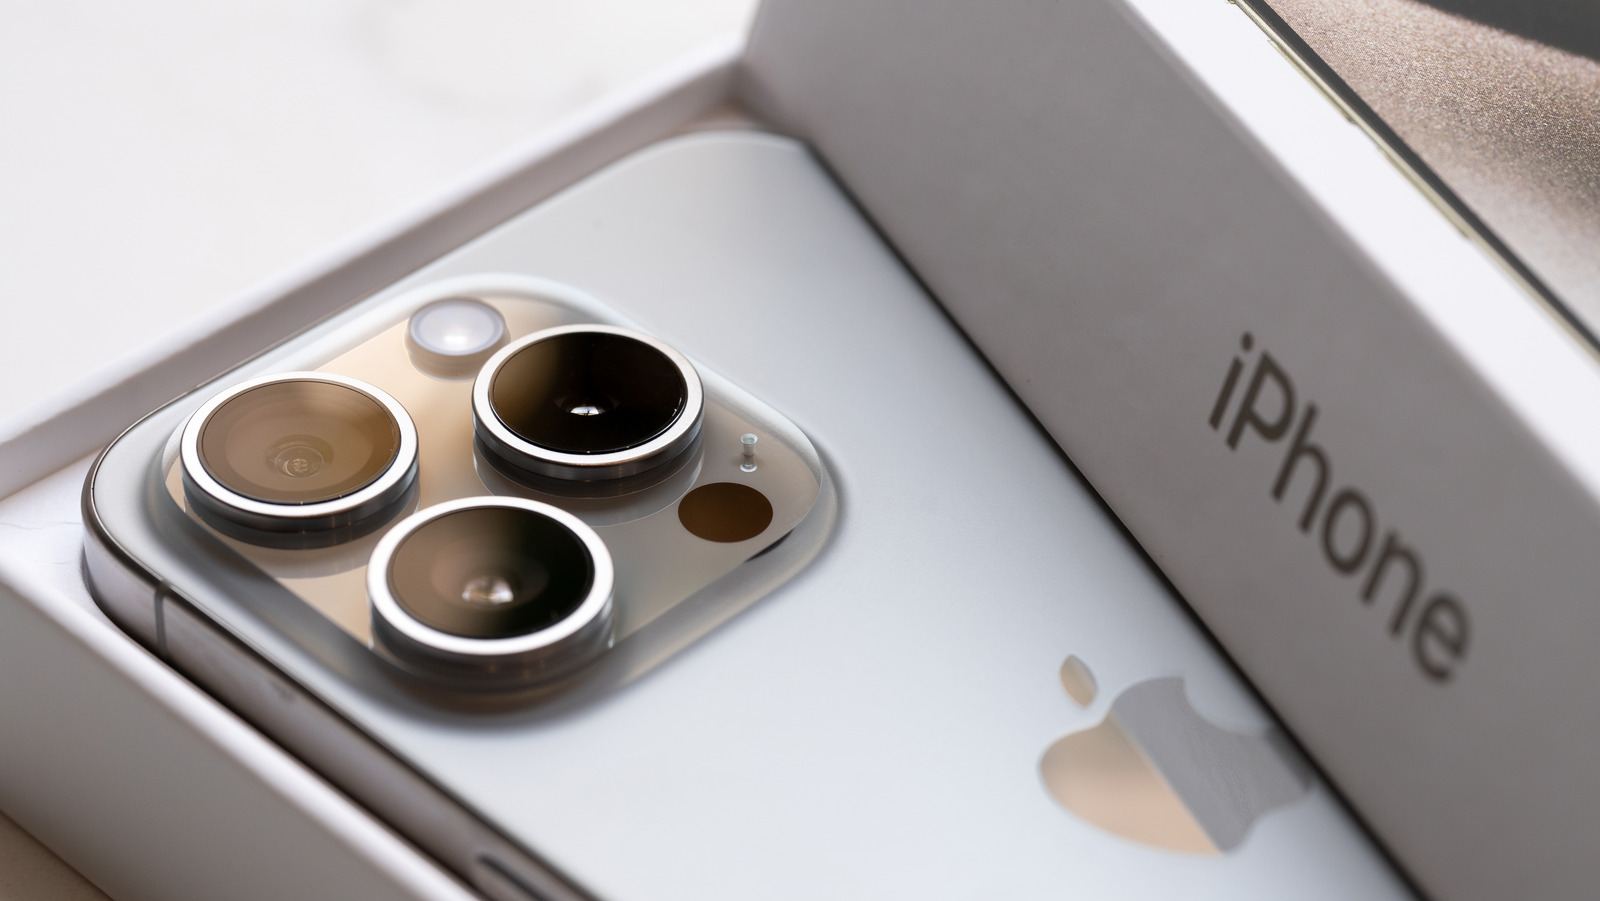 Los rumores sobre el modelo plegable de Apple han vuelto, pero ¿es un iPhone o un iPad?